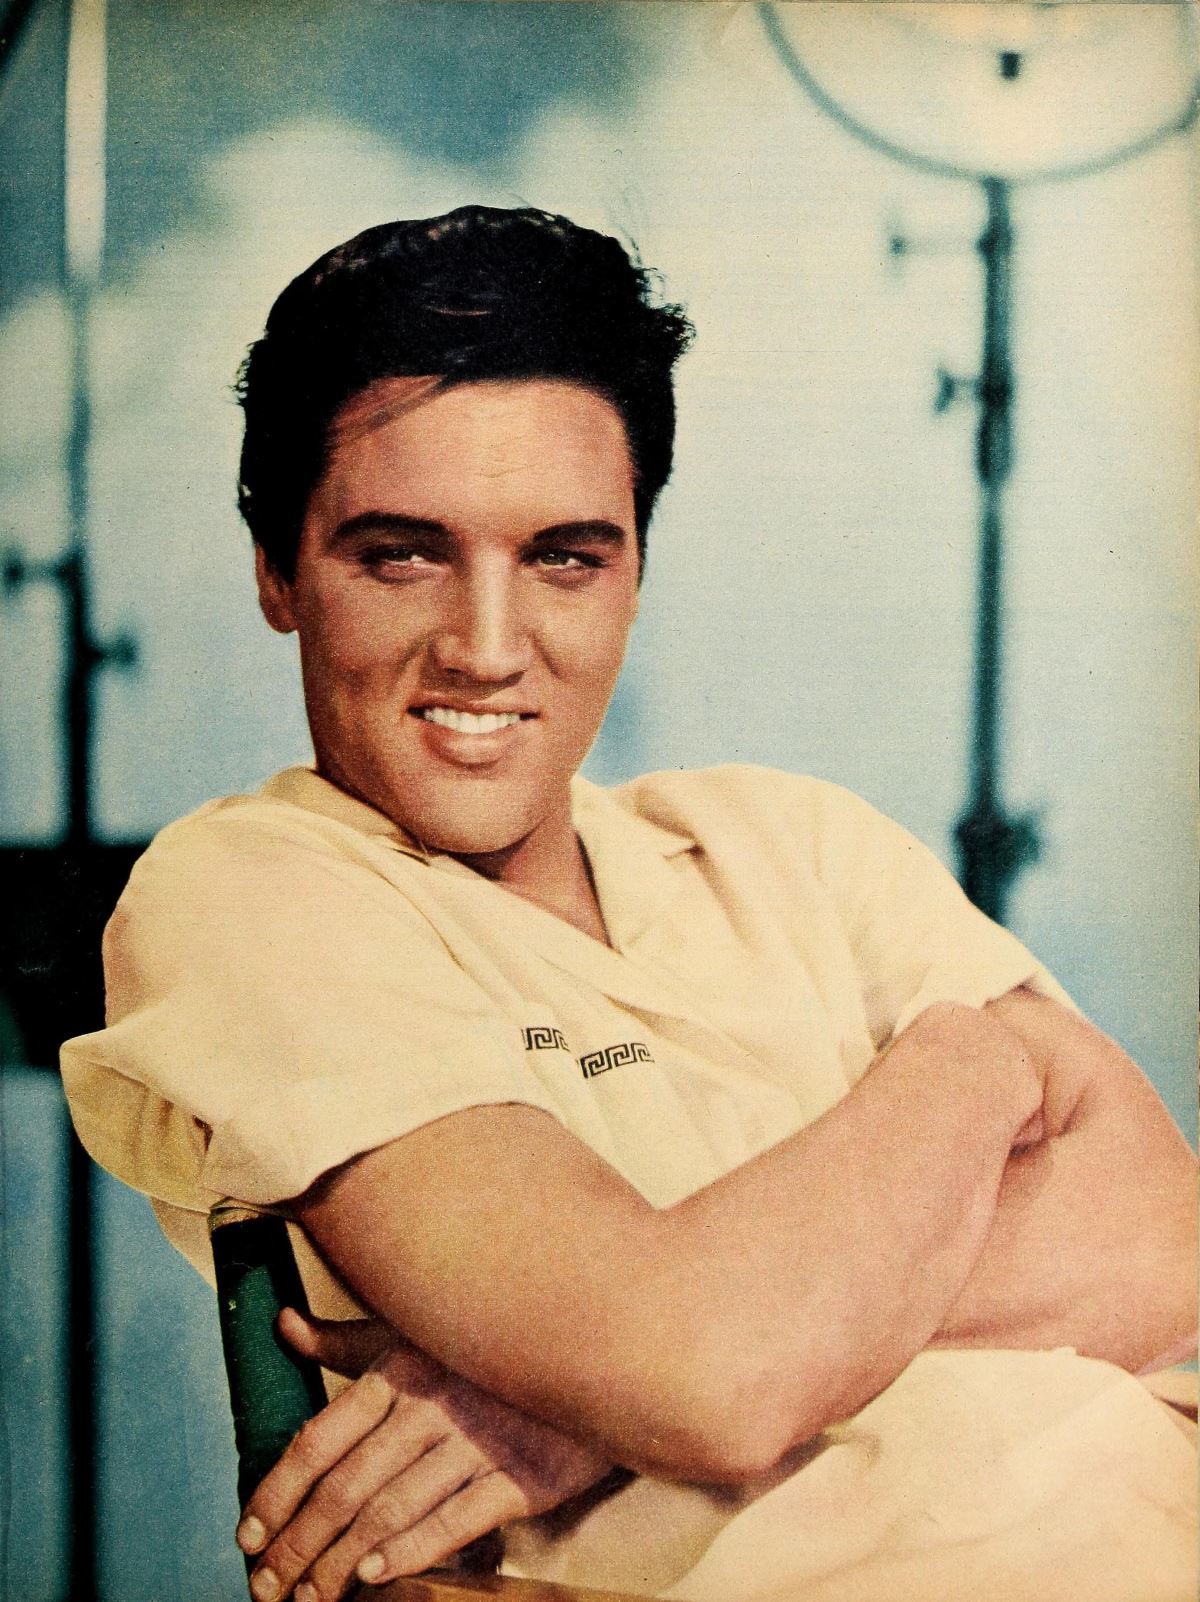 <p><strong>6. İlk plağı annesine hediyeydi</strong></p>
<p><strong>1953'te</strong> Presley ilk demo kaydını <strong>Memphis, Tennessee'deki Sun Records'ta,</strong> öncelikle annesi Gladys'e doğum günü hediyesi olarak kaydetti. Plak şirketinin sahibi Sam Phillips, onun sesinden ve benzersiz tarzından etkilenmiş ve ona bir albüm anlaşması yapmıştı. Sam, Presley'i bazı yerel müzisyenlerle bir araya getirdi ve Presley'in 1954'te çıkan ilk single'ı "<strong>This's All Right"ı</strong> kaydettiler. Bir <strong>rock'n roll</strong> sanatçısı olarak ünlendi.</p>
<p>Elvis, kısa süre sonra müzik kariyerinin geri kalanında önemli bir rol oynamaya devam eden<strong> 'Albay' Tom Parker</strong> olarak bilinen bir organizatör ile tanıştı ve yerel bir canlı radyo programında düzenli olarak yer almaya başladı.</p>